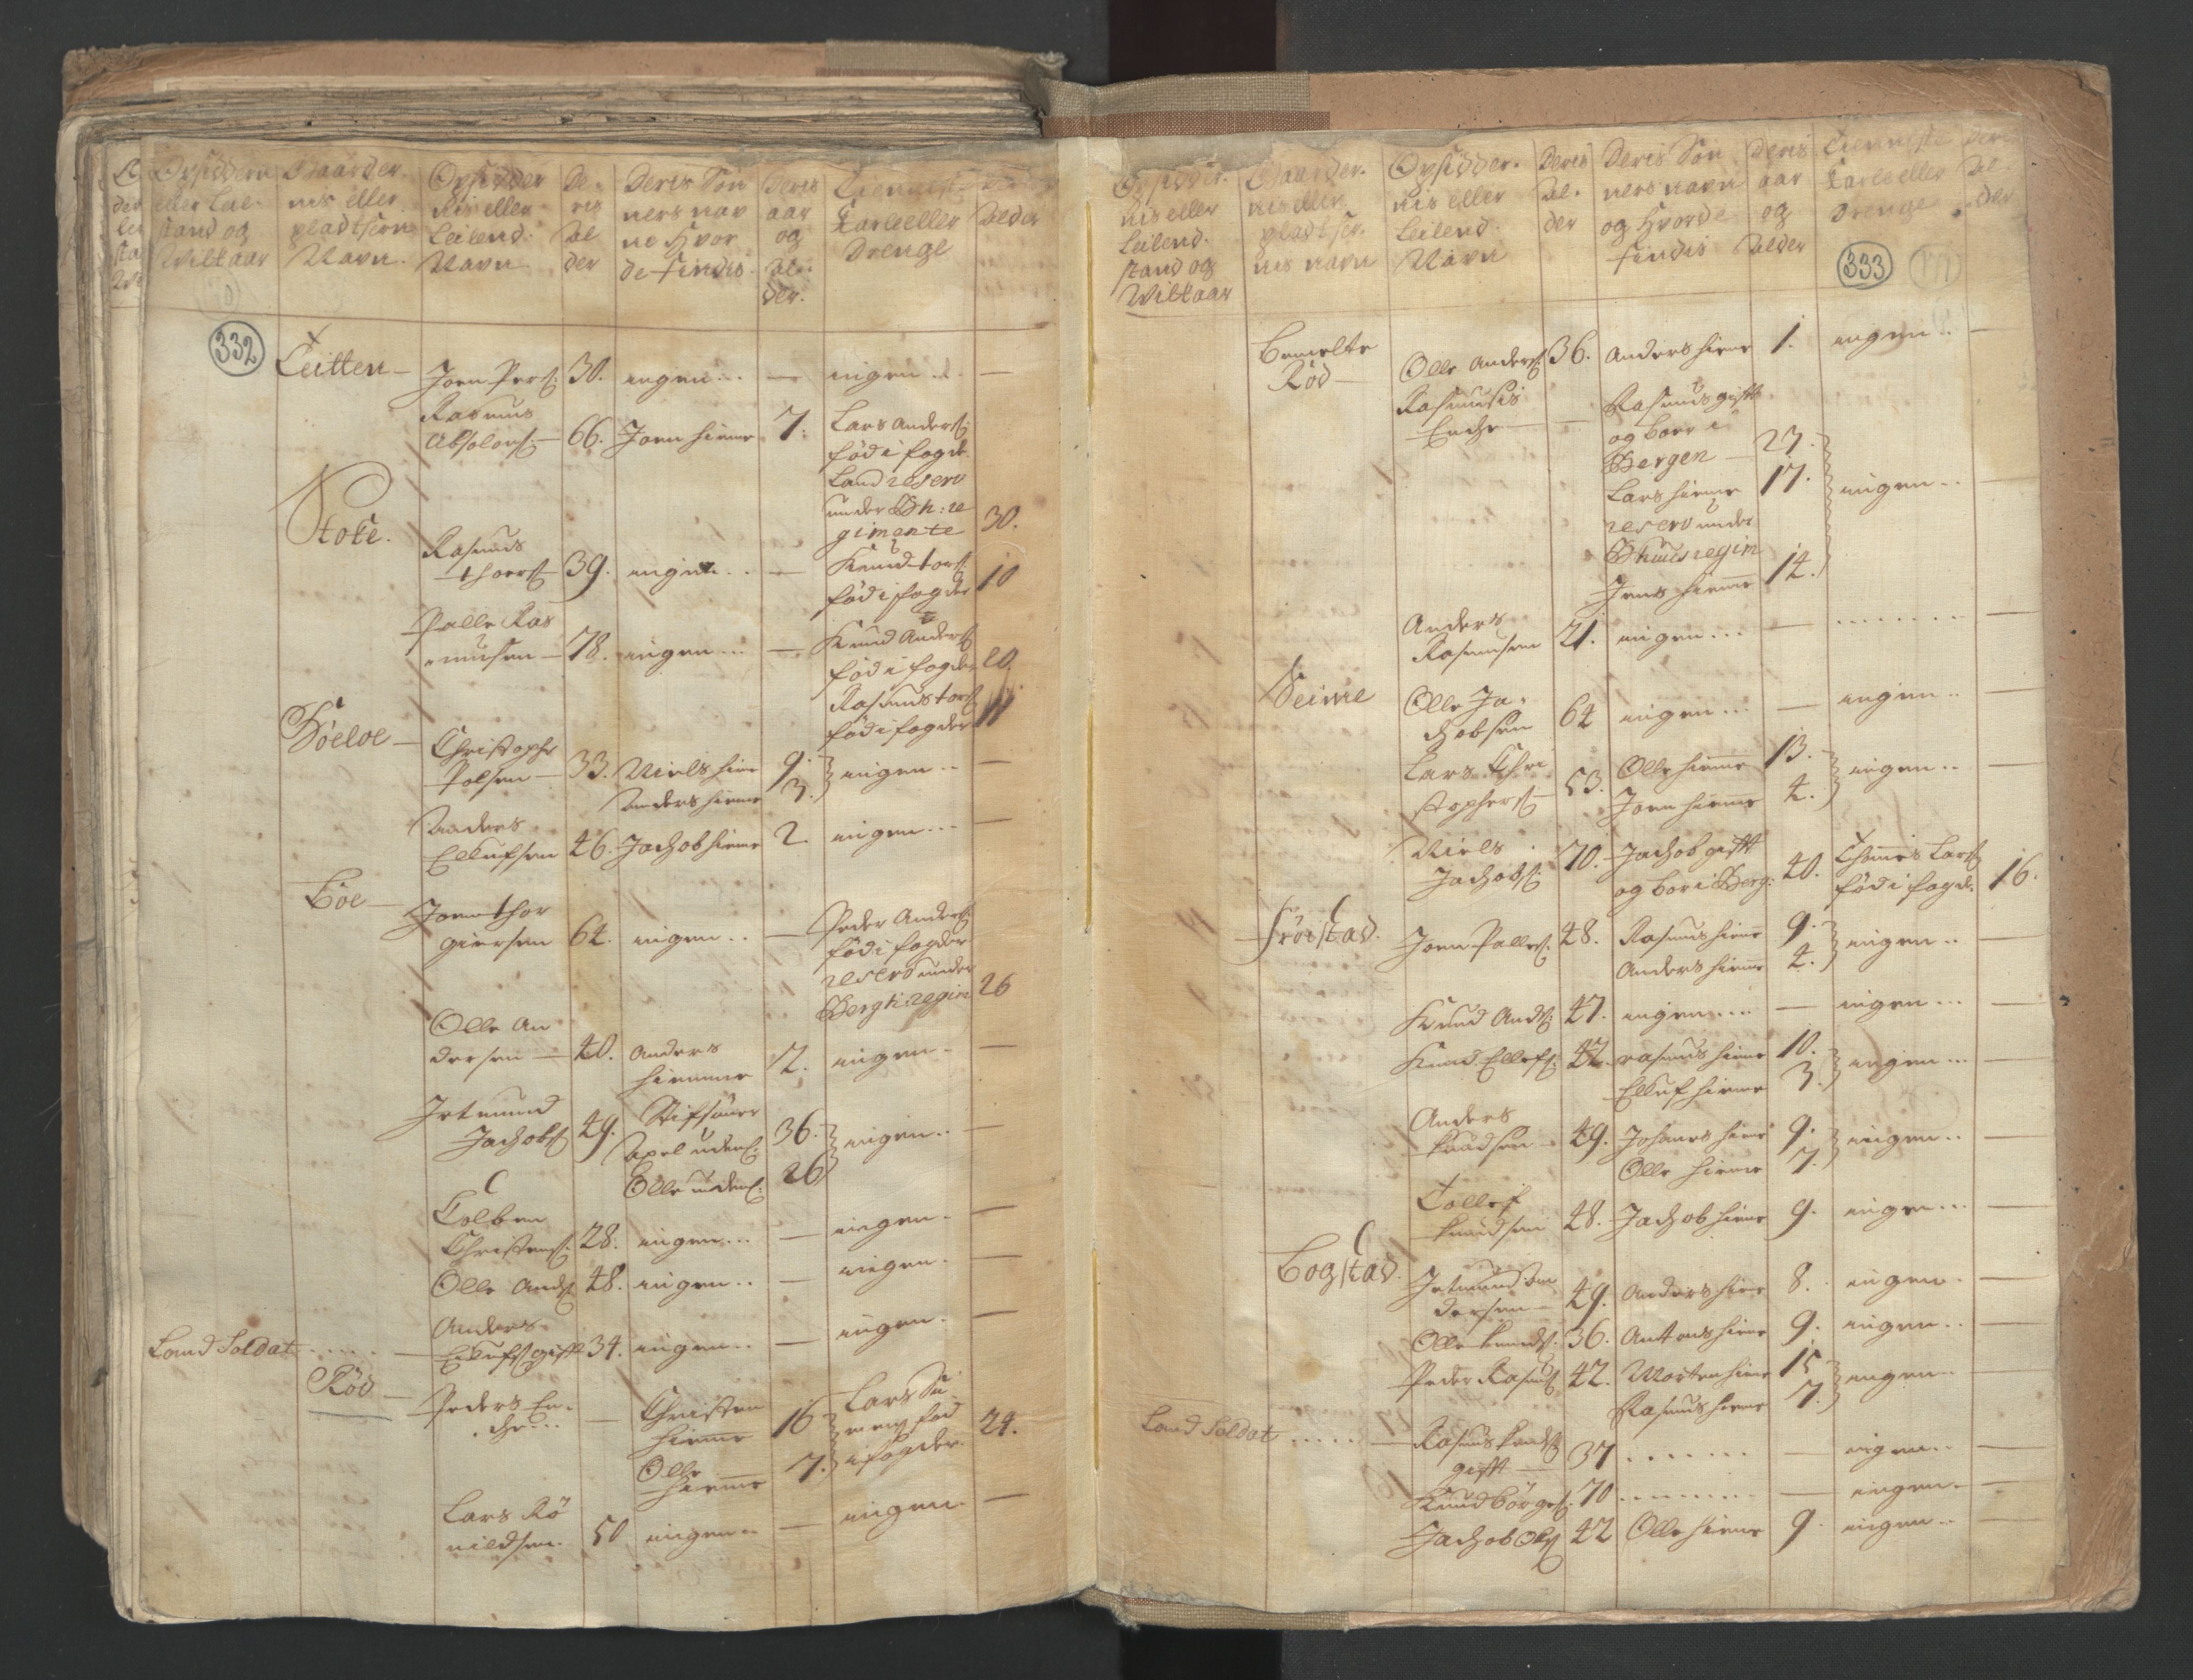 RA, Census (manntall) 1701, no. 9: Sunnfjord fogderi, Nordfjord fogderi and Svanø birk, 1701, p. 332-333